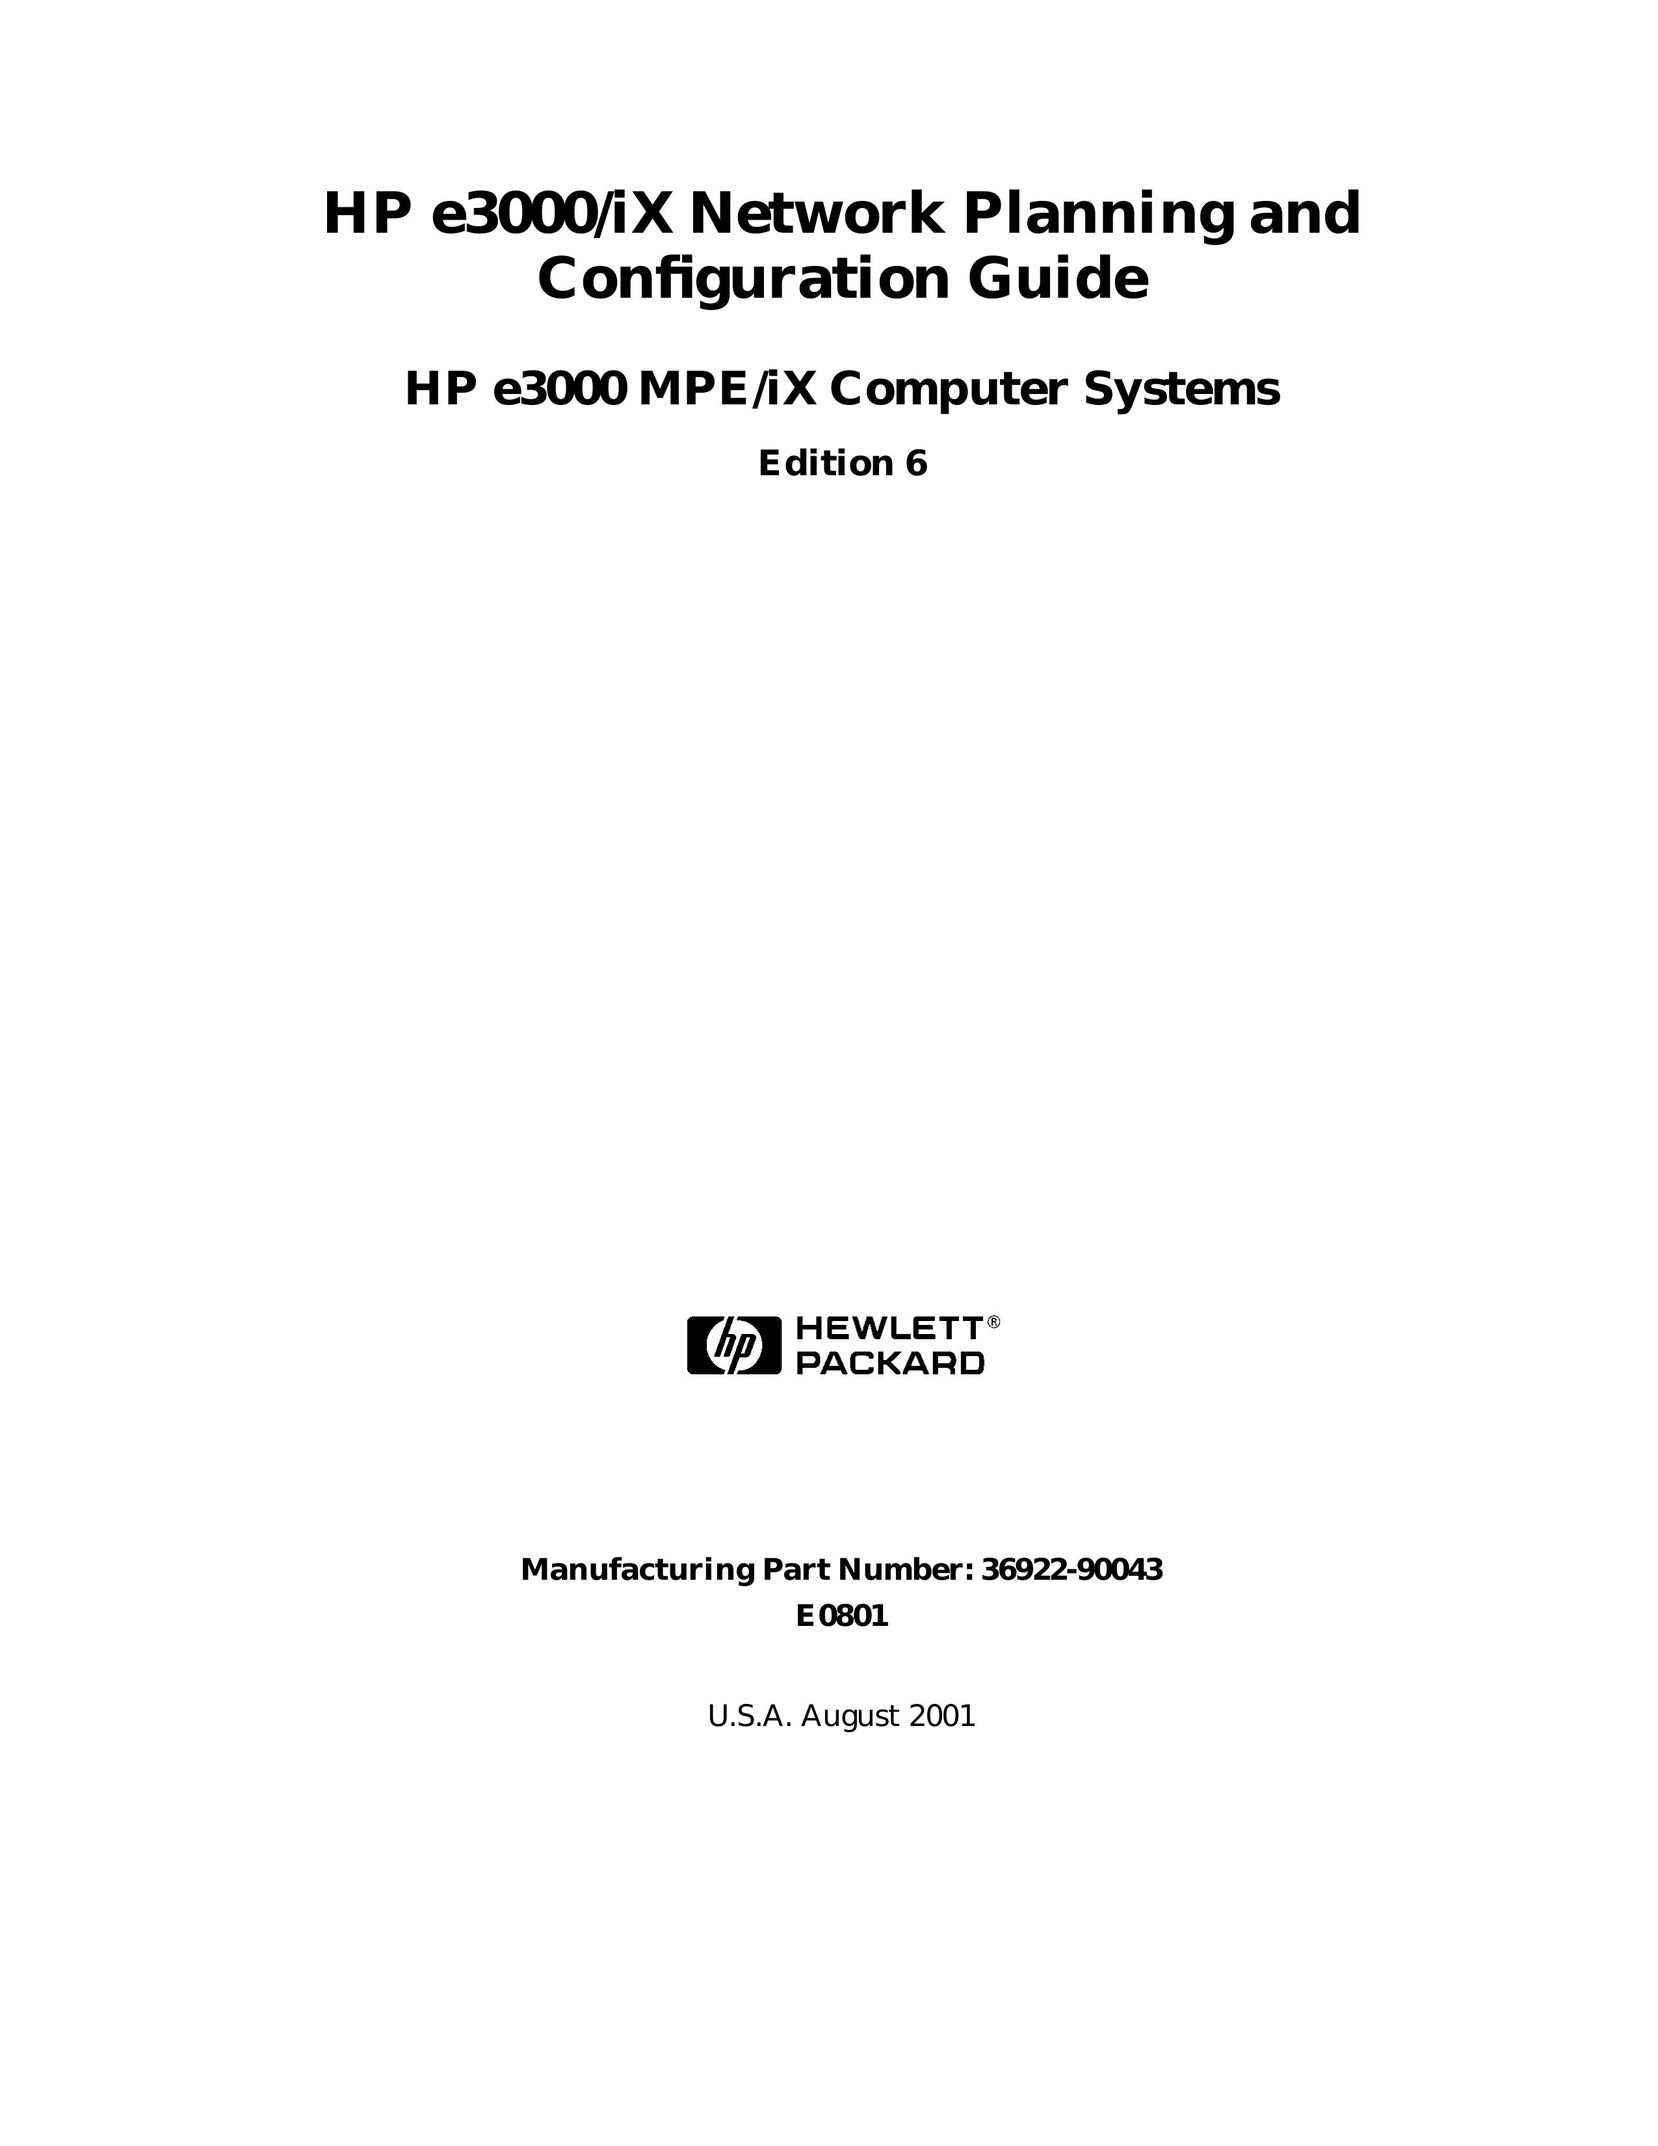 HP (Hewlett-Packard) E3000/IX Network Hardware User Manual